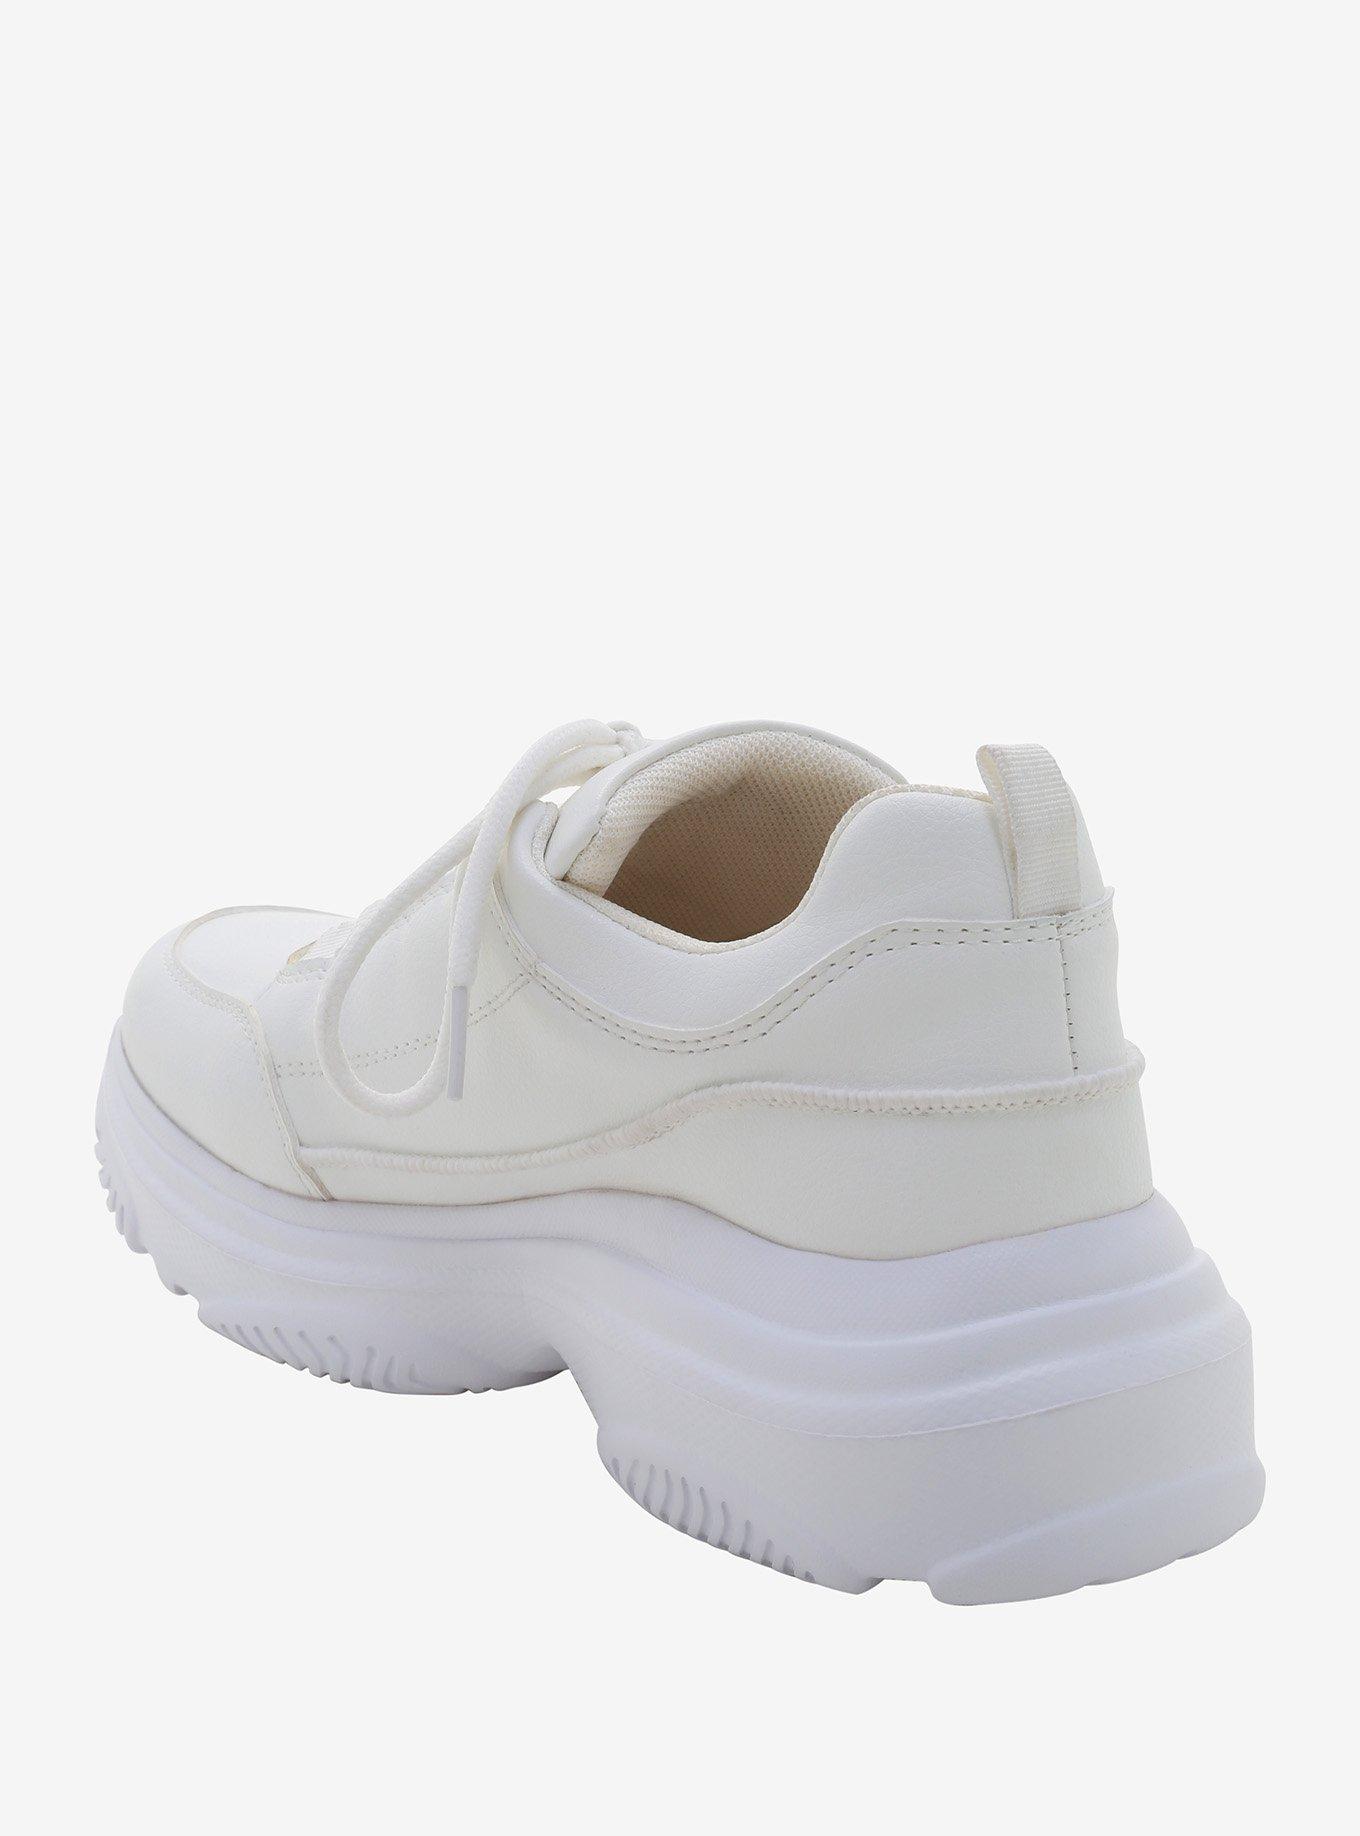 White Chunky Sneakers, WHITE, alternate